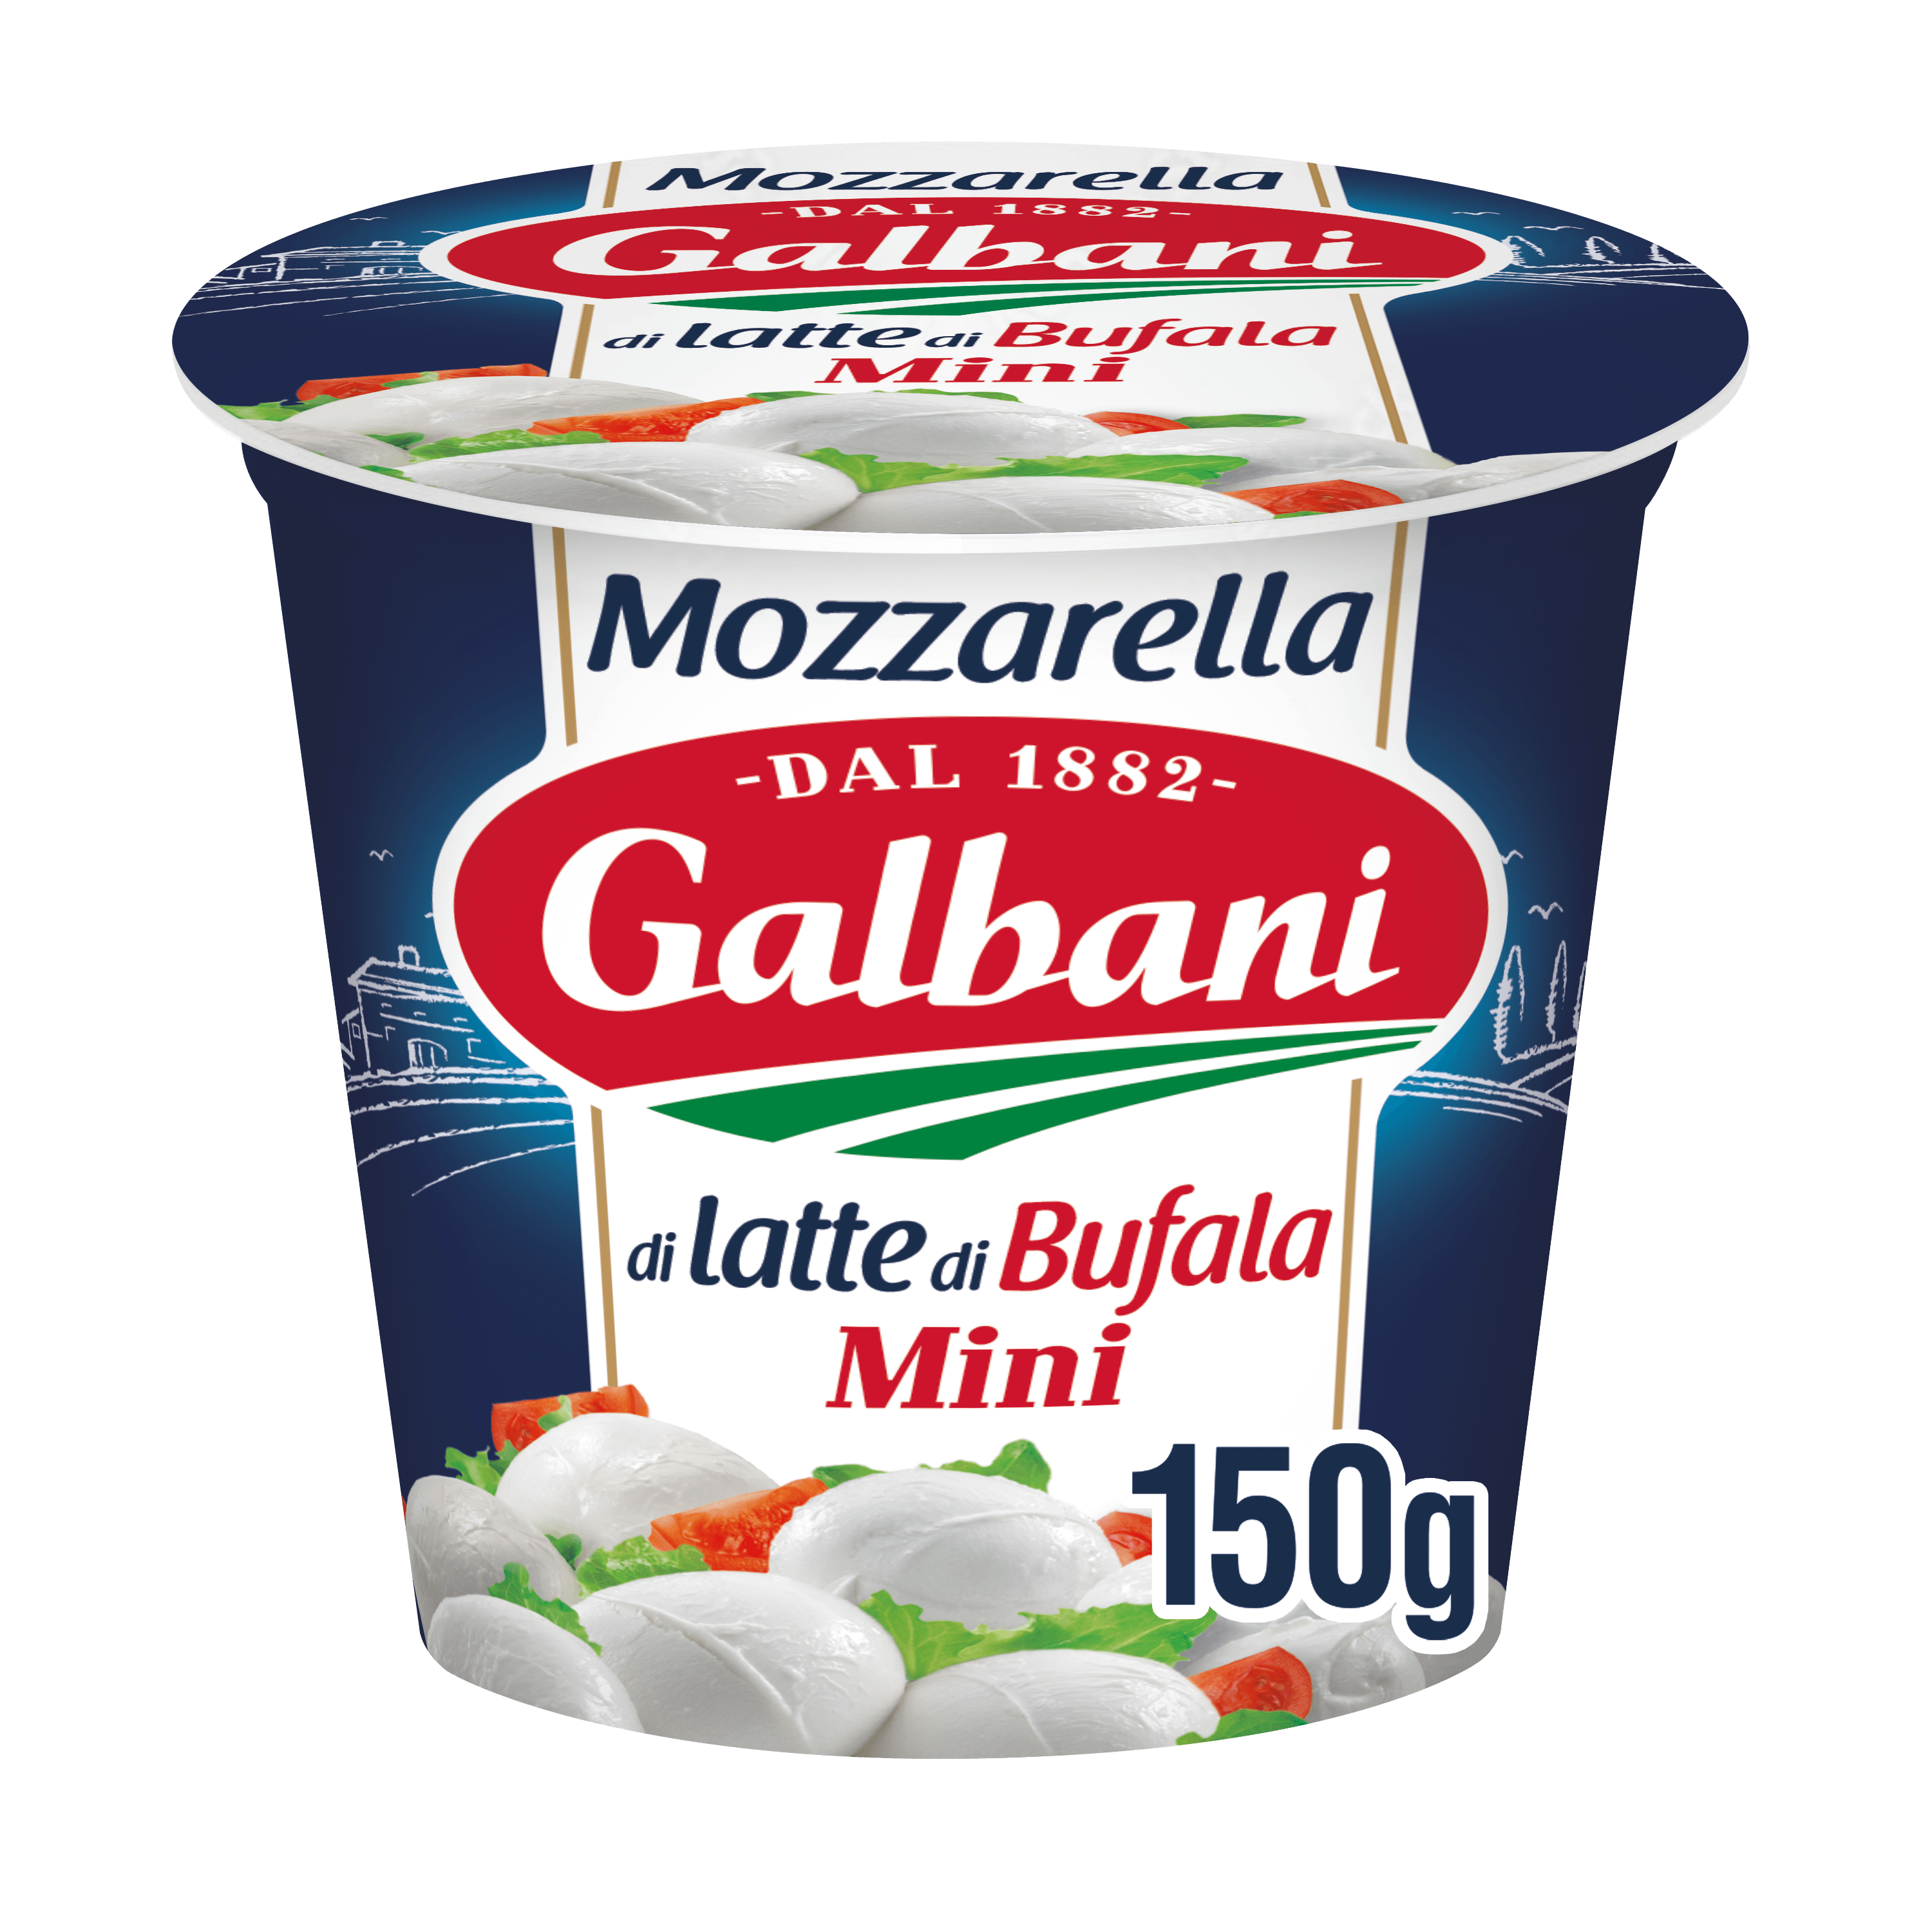 Galbani Mozzarella di Latte di Bufala Mini 150g